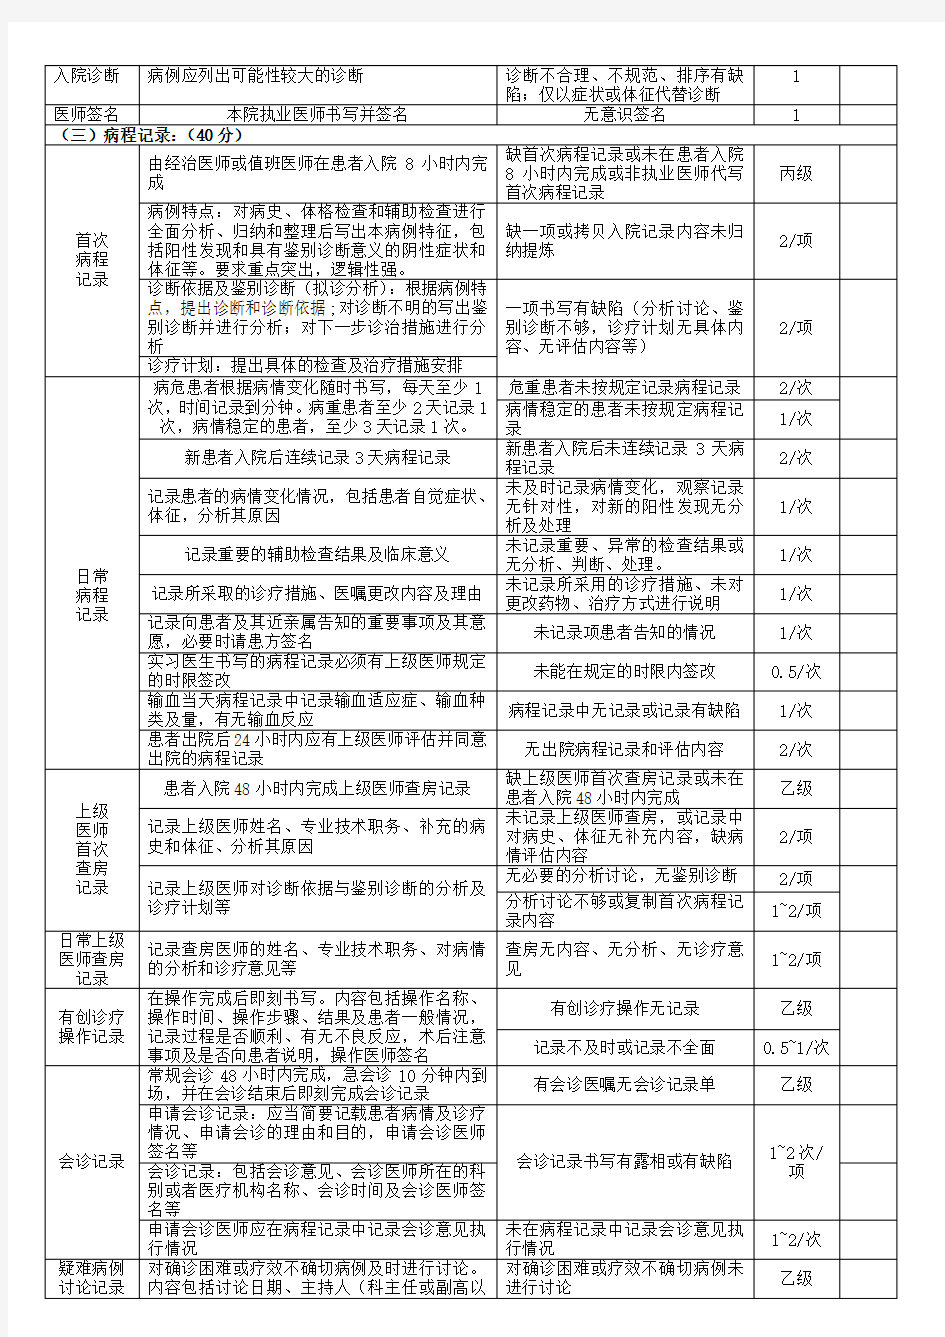 安徽省新版病历书写规范(2015版)检查表